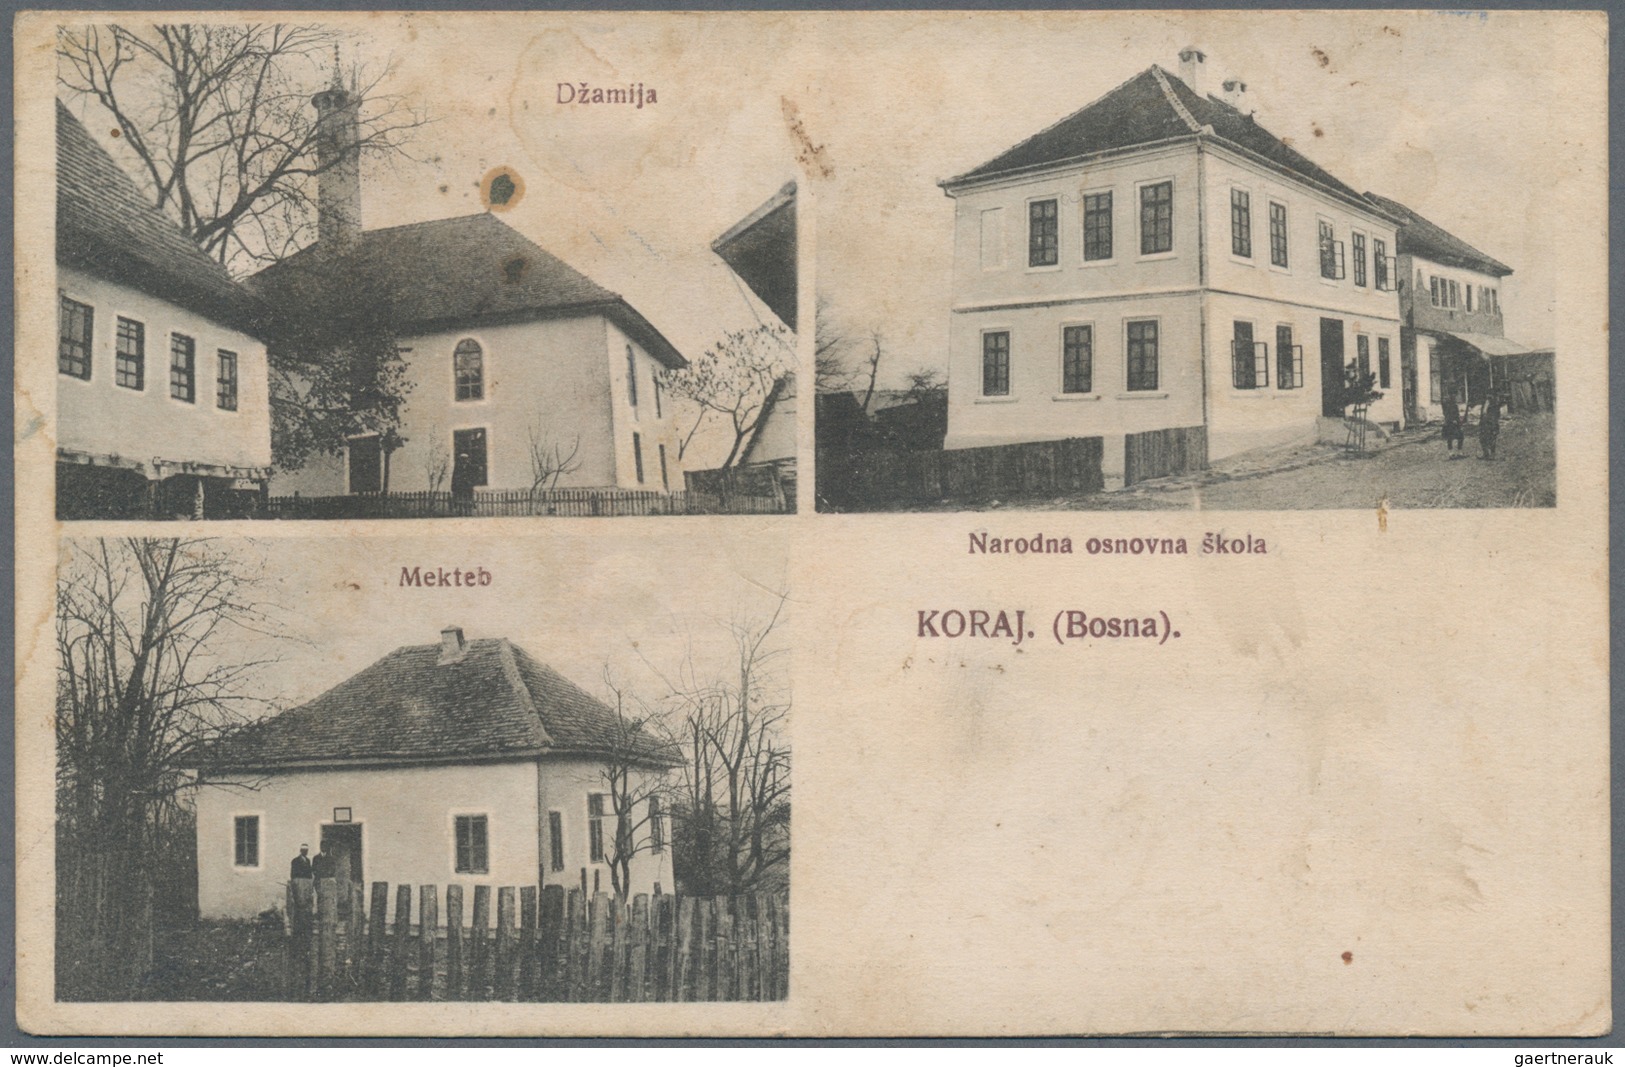 Bosnien und Herzegowina: 1874/1918 (ca). toller Bestand von nur besseren Einzelstücken, dabei Paketk